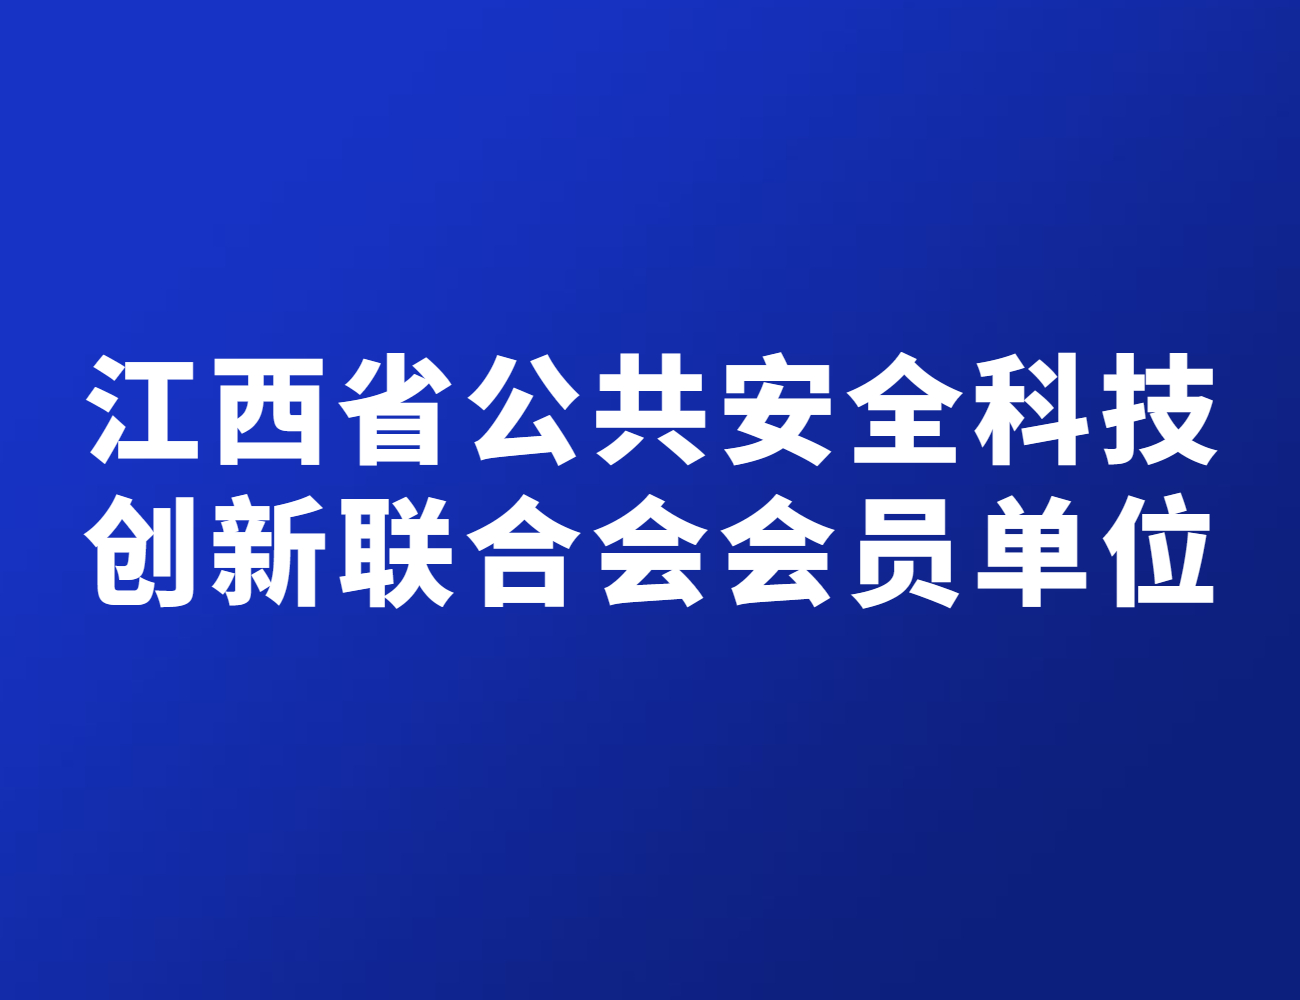 江西省公共安全科技创新联合会会员单位